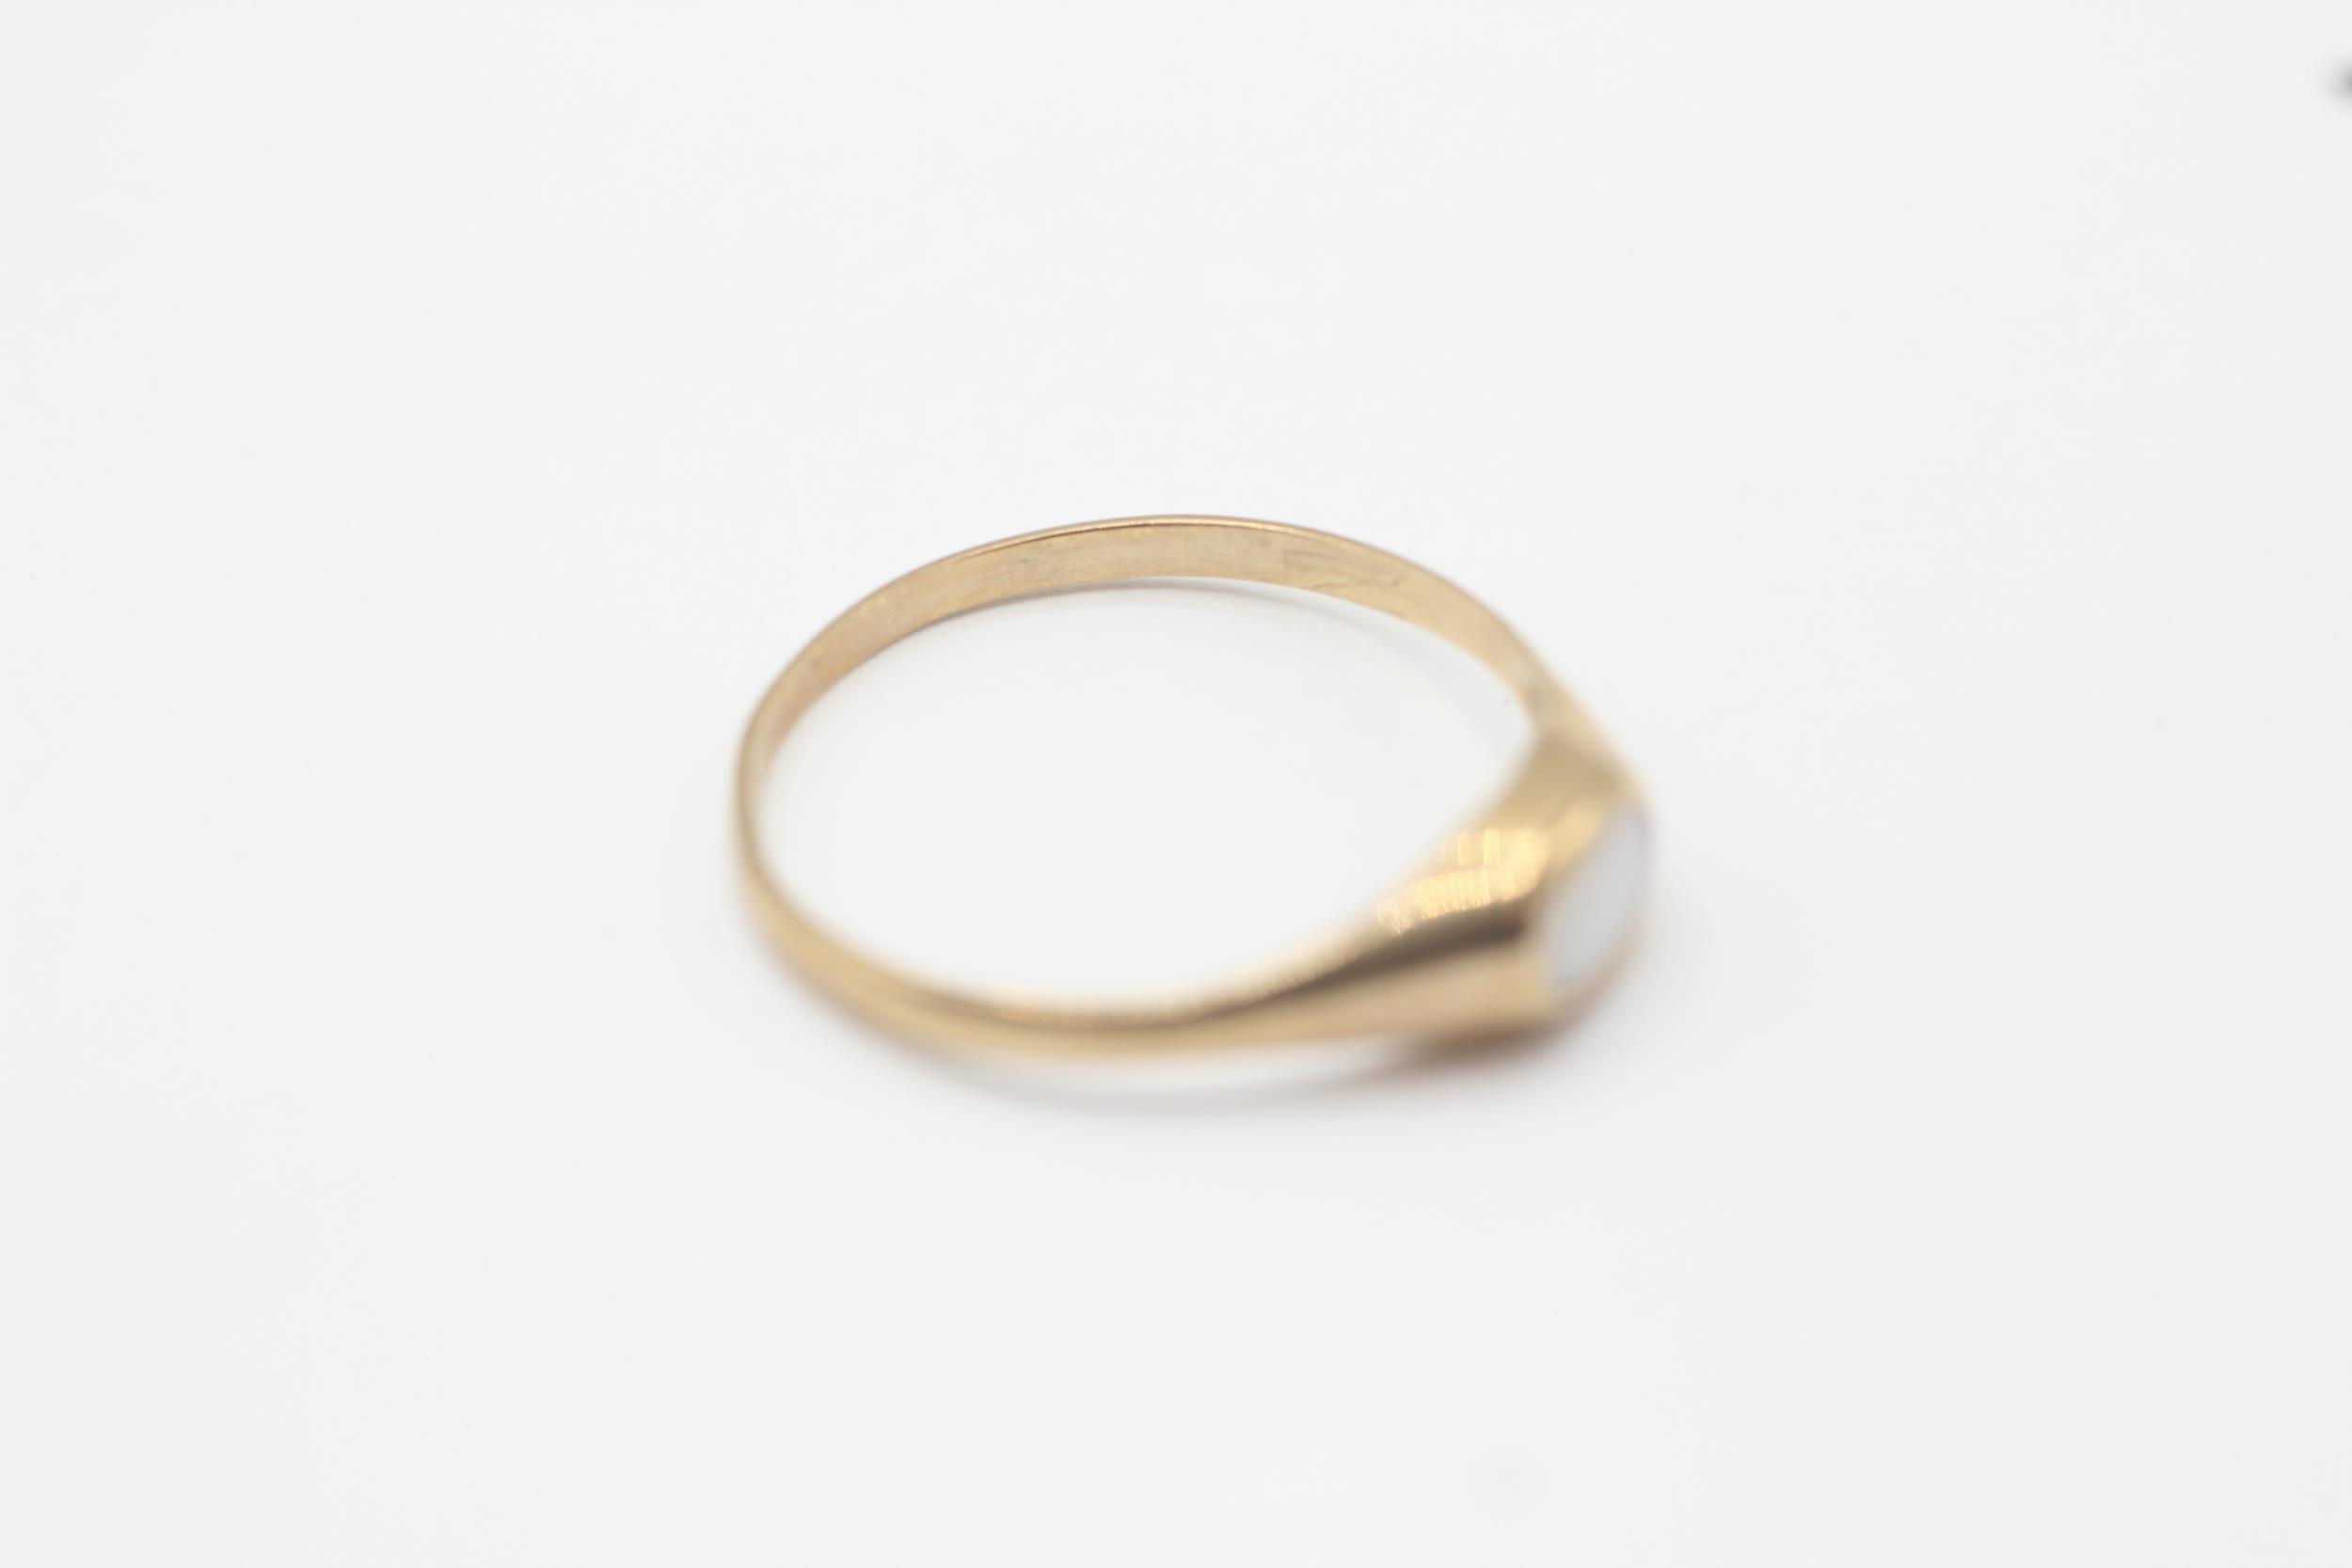 9ct gold bezel set white opal single stone ring Size O 1 g - Image 6 of 6